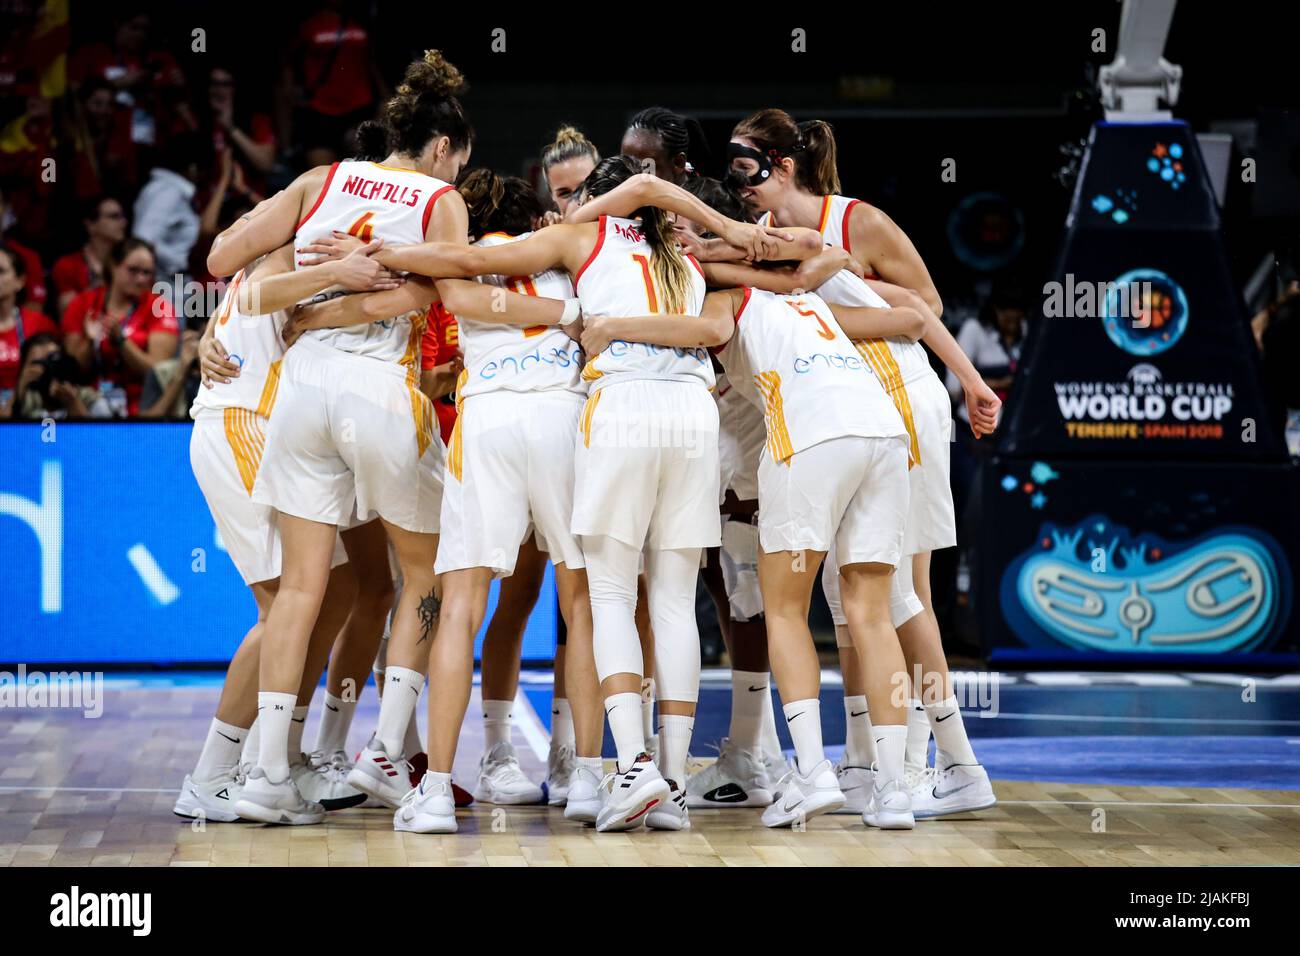 Espagne, Ténérife, 26 septembre 2018 : l'équipe nationale féminine de basket-ball espagnole célèbre la victoire lors de la coupe du monde de basket-ball féminin Banque D'Images